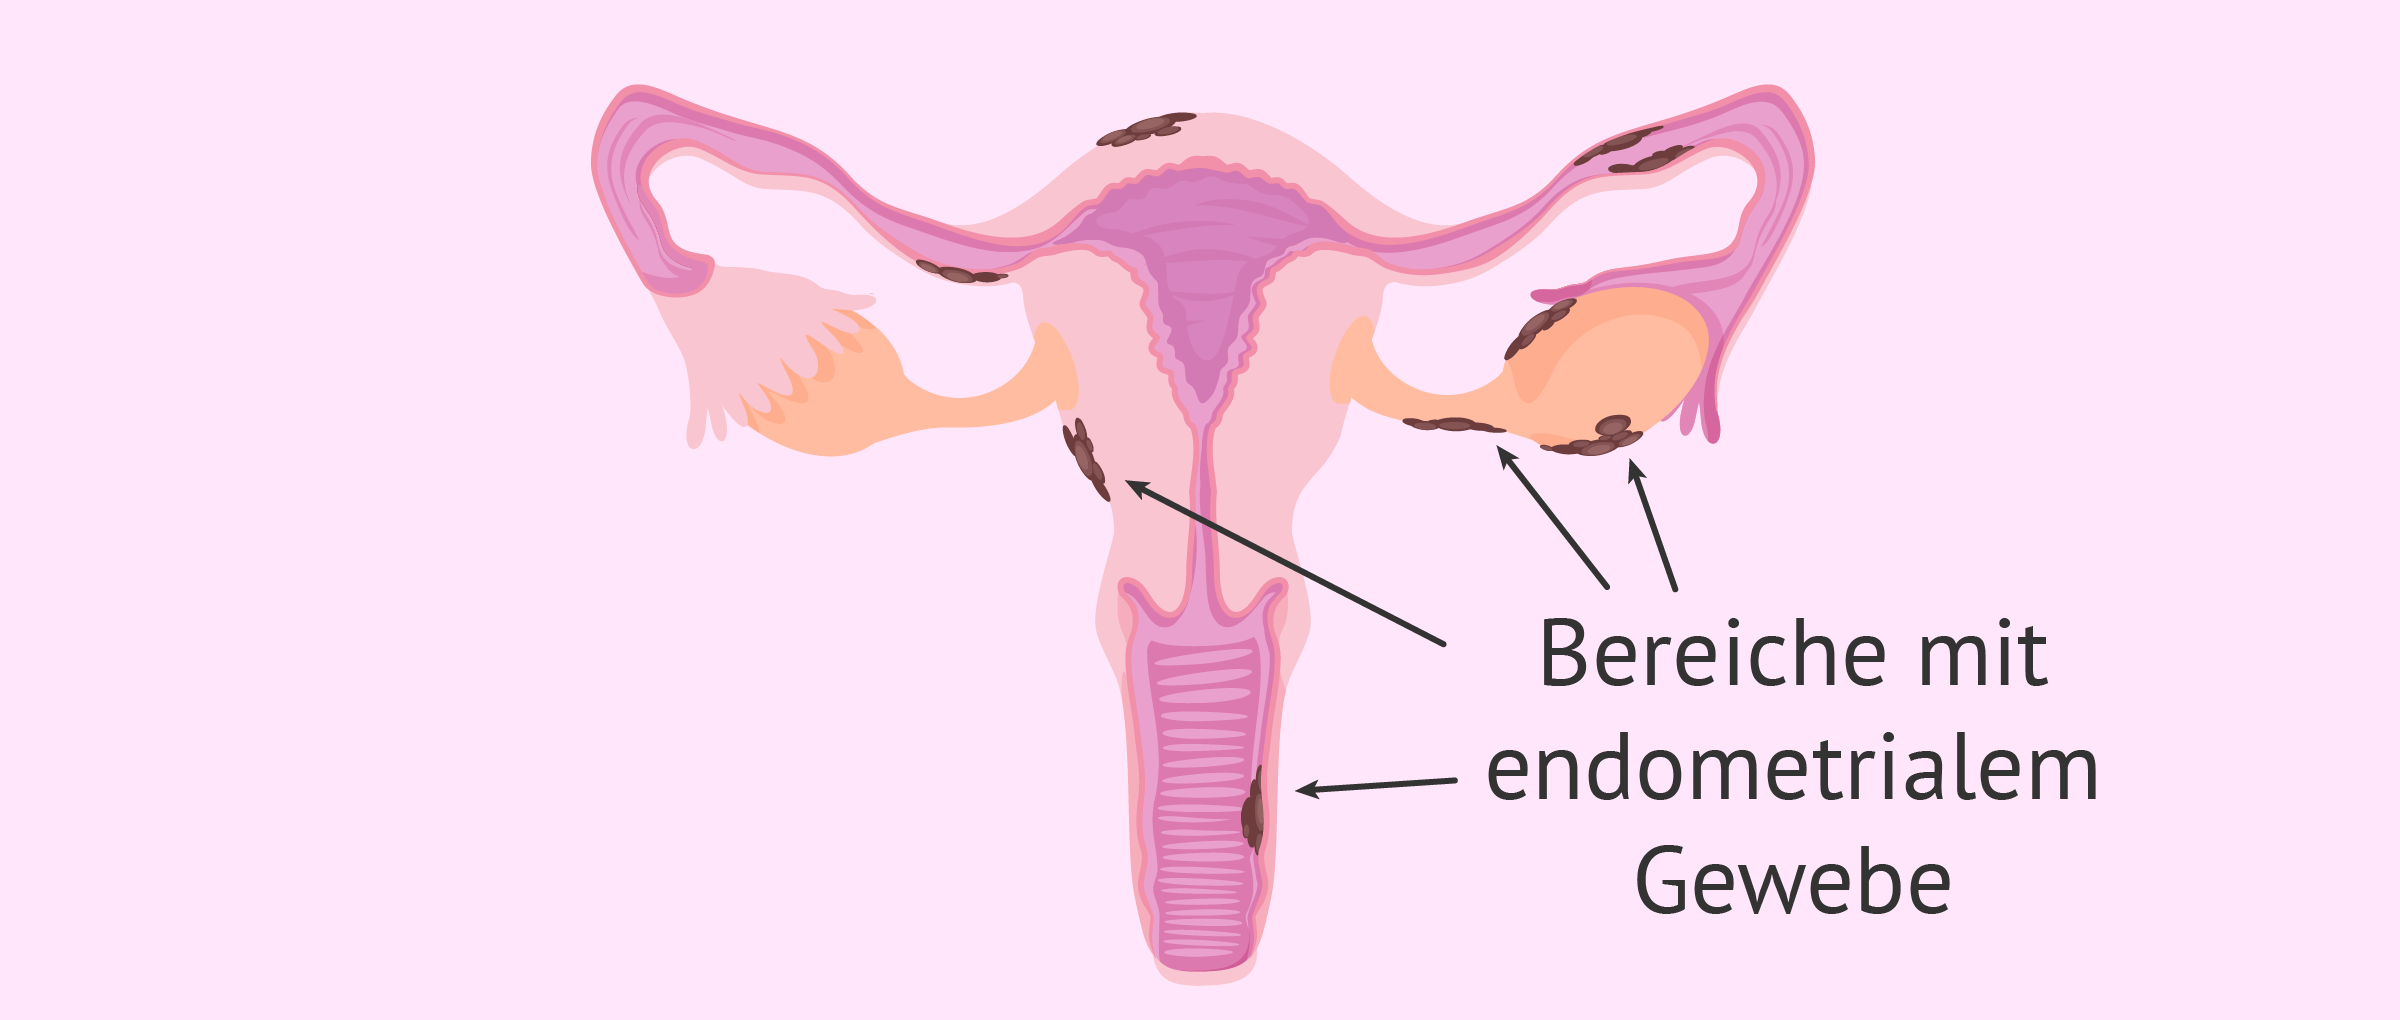 Die Endometriose